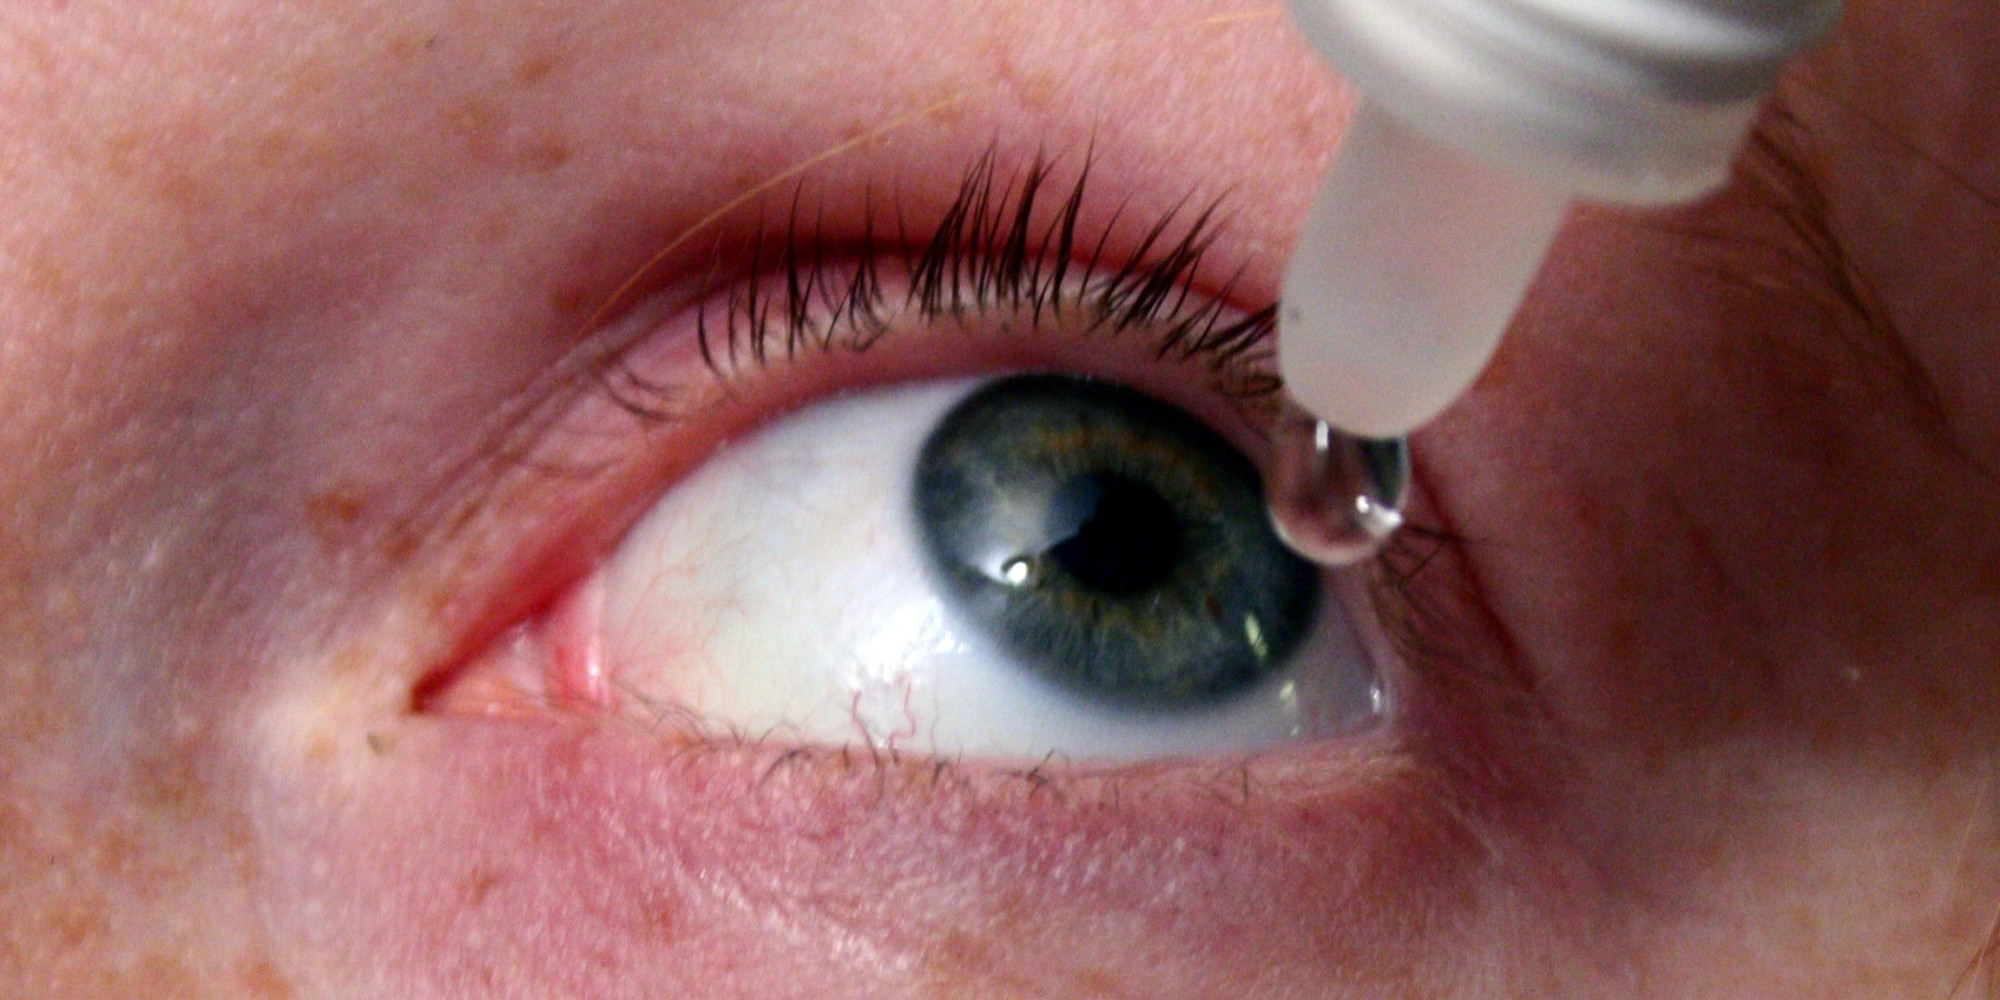 ΕΟΦ: Ανακαλεί γνωστό αντιαλλεργικό σκεύασμα με οφθαλμικές σταγόνες